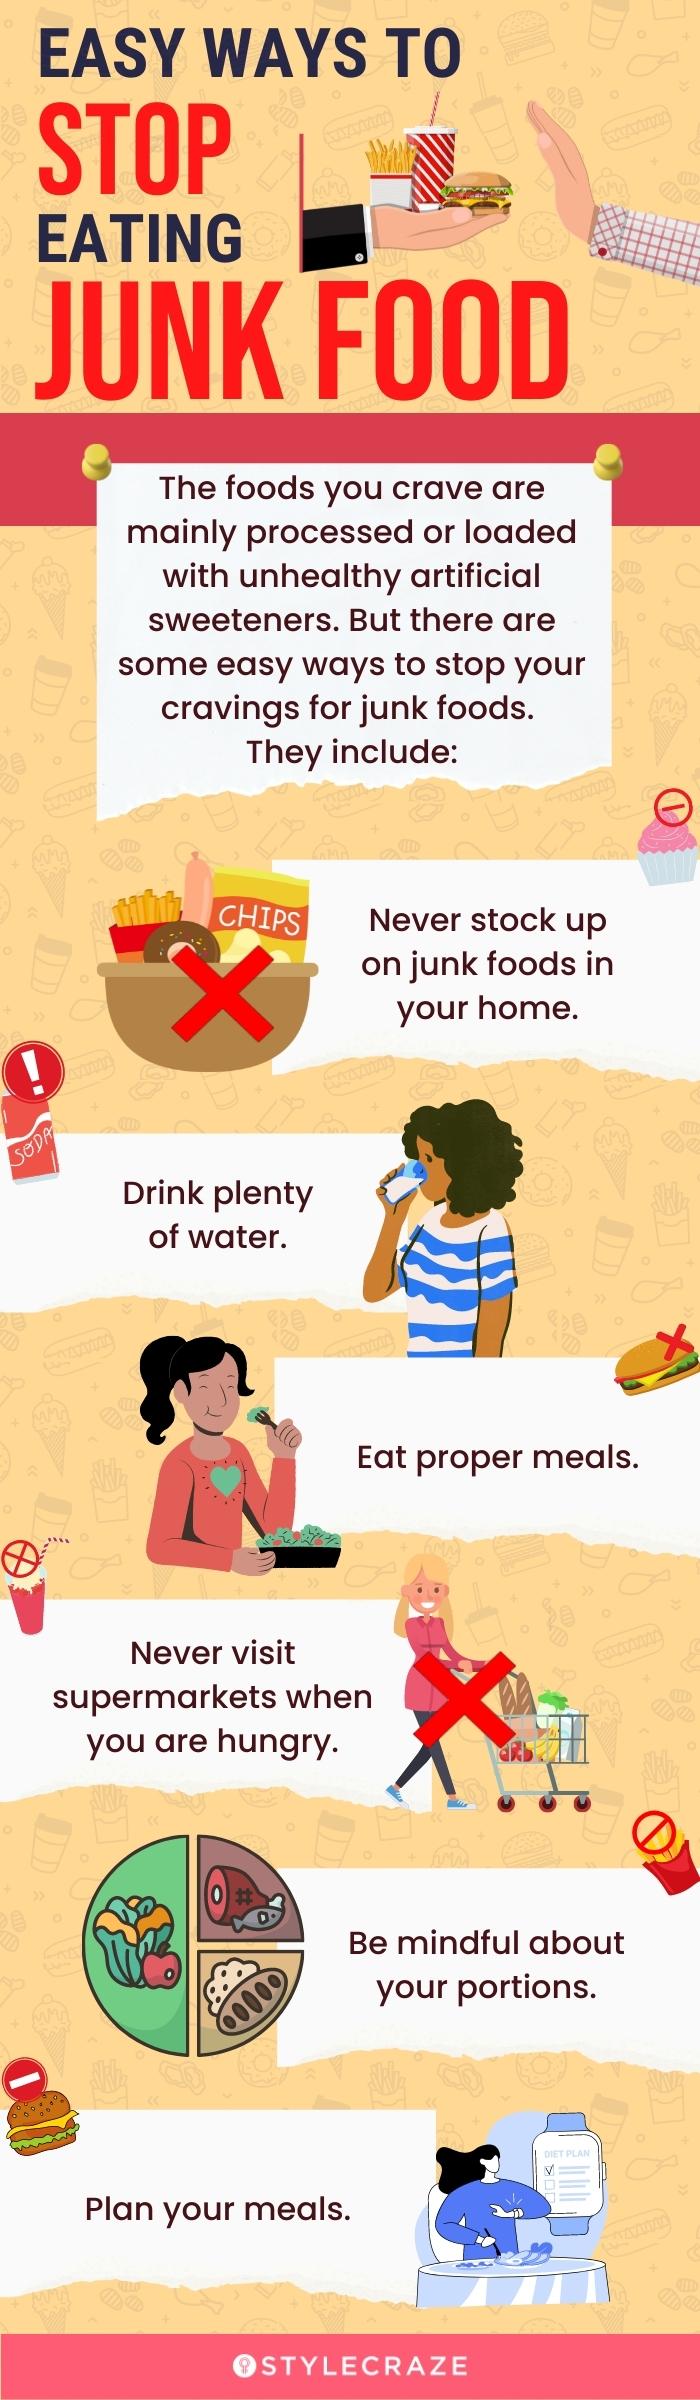 lines-on-healthy-food-vs-junk-food-10-lines-on-healthy-vs-junk-food